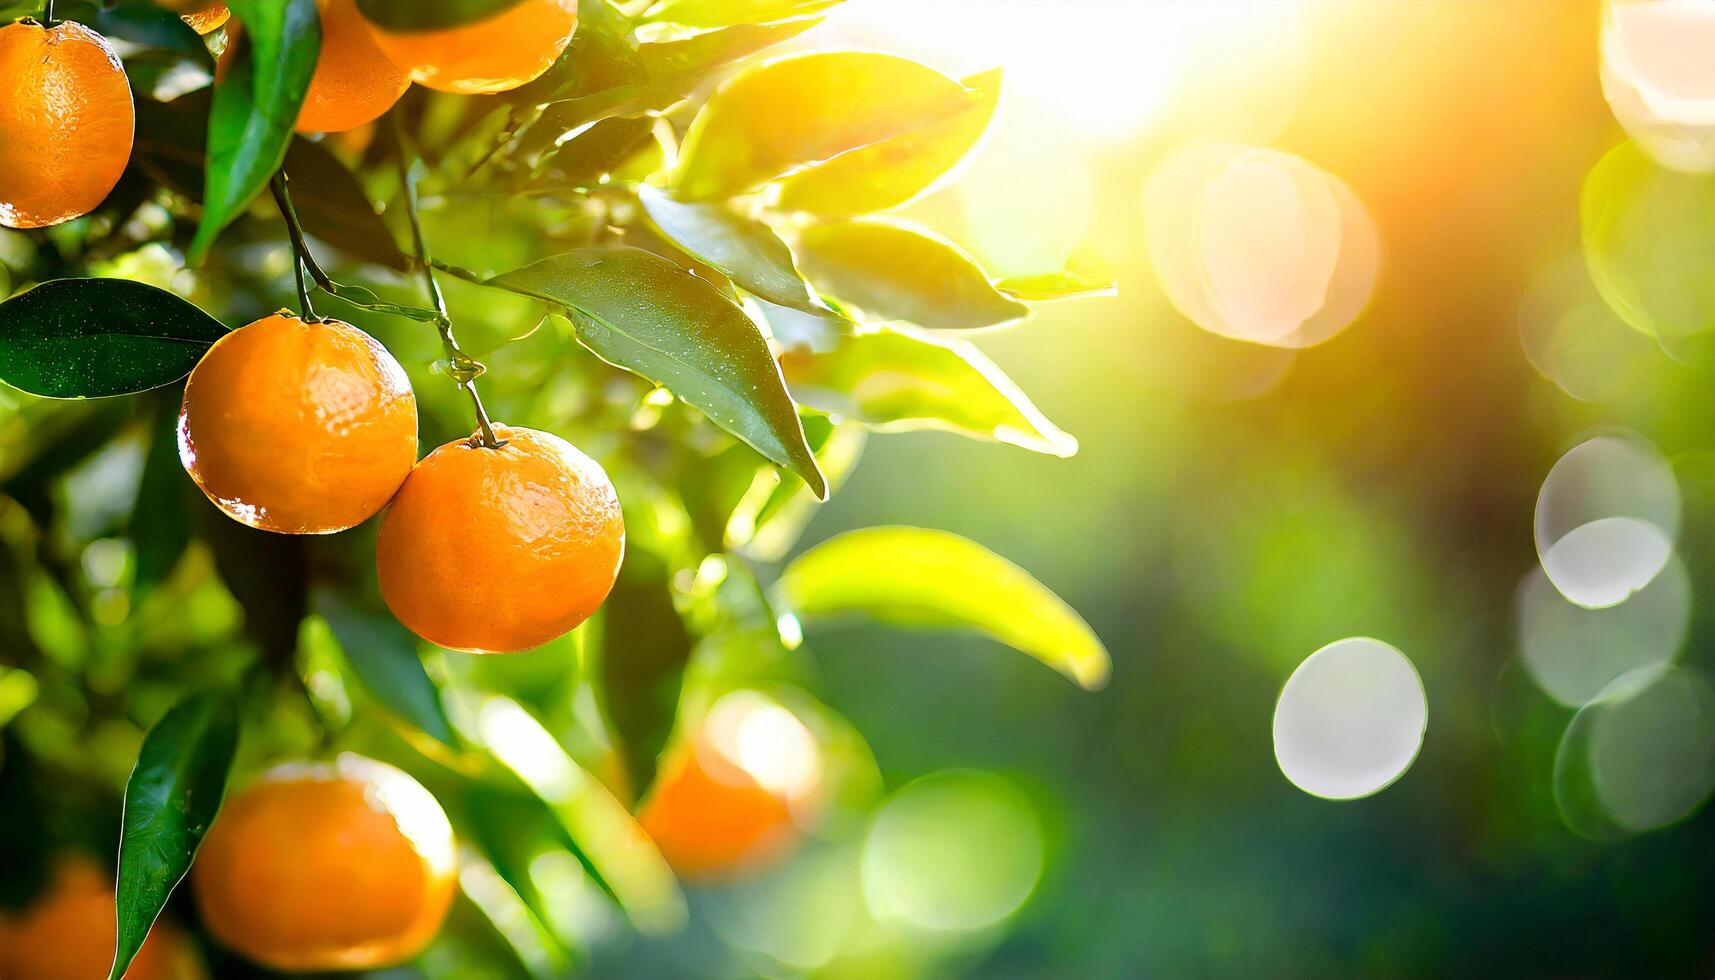 ai gerado citrino galhos com orgânico maduro fresco laranjas tangerinas crescendo em galhos com verde sair fundo foto